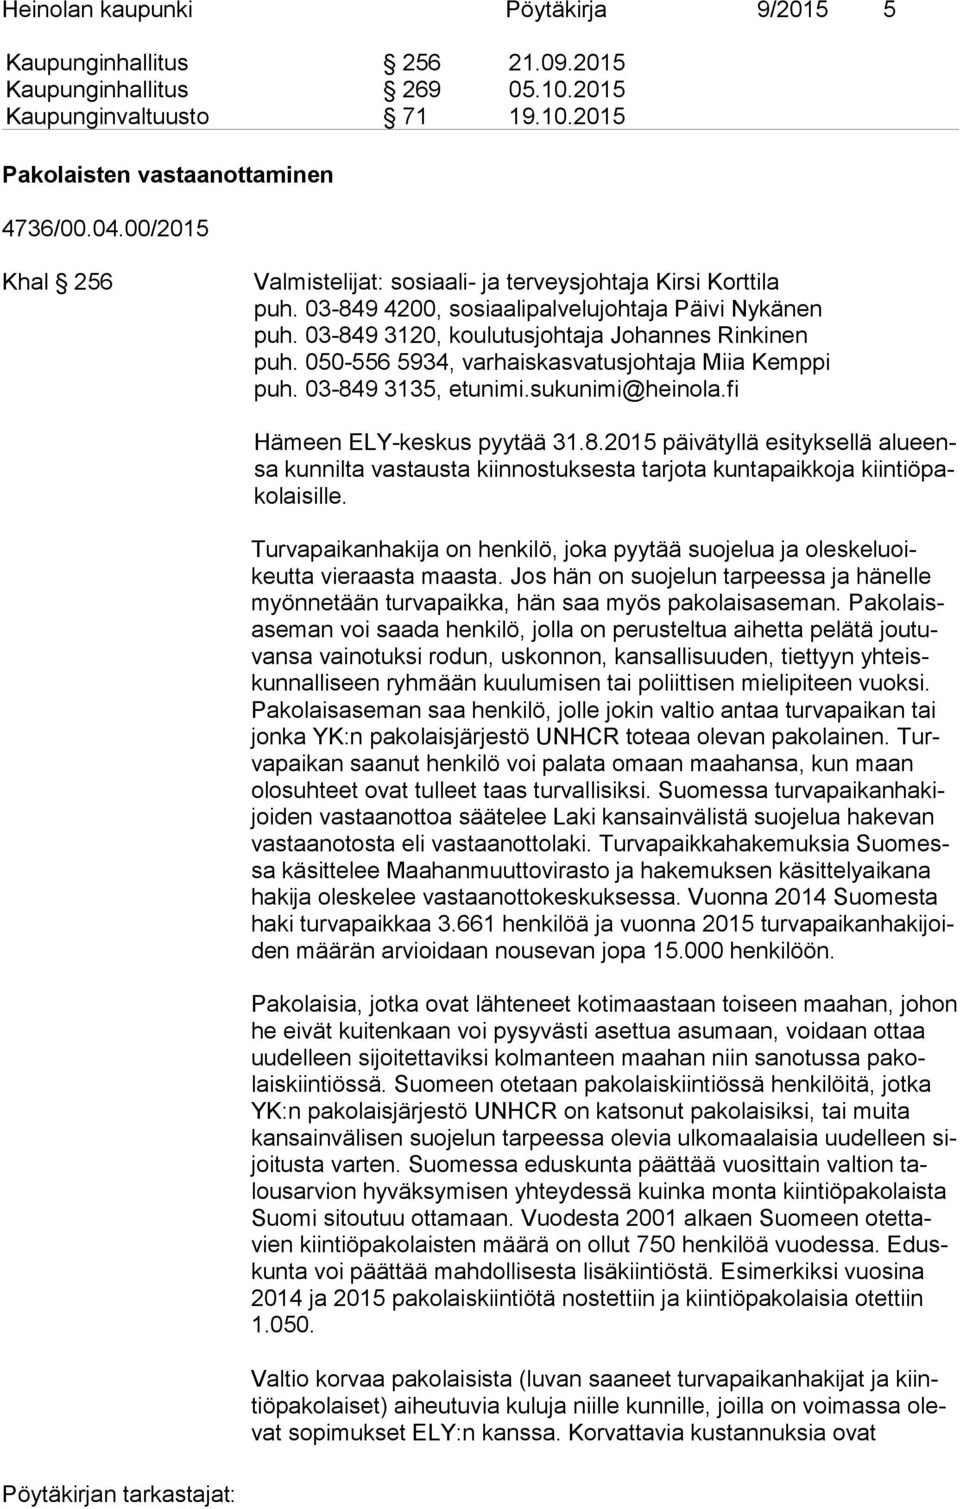 050-556 5934, var hais kas va tus joh ta ja Miia Kemppi puh. 03-849 3135, etunimi.sukunimi@heinola.fi Hämeen ELY-keskus pyytää 31.8.2015 päivätyllä esityksellä alu eensa kunnilta vastausta kiinnostuksesta tarjota kuntapaikkoja kiin tiö pako lai sil le.